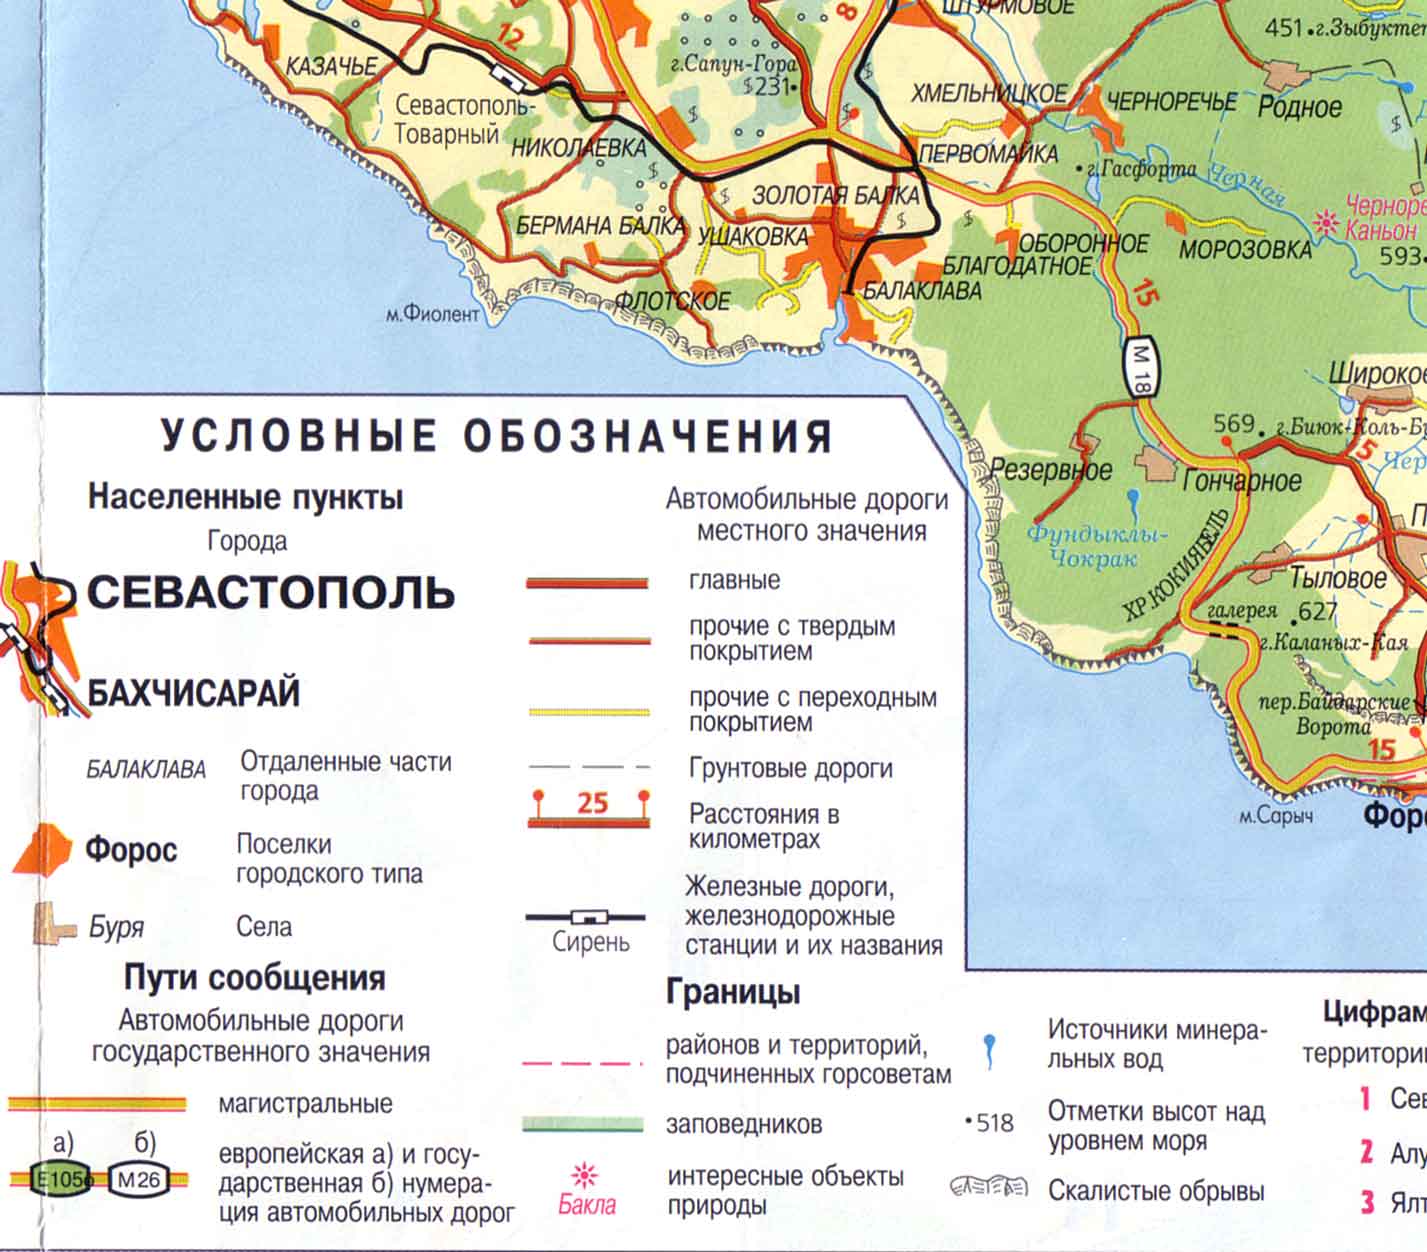 Подробная карта Южного берега Крыма. Фрагмент 3.